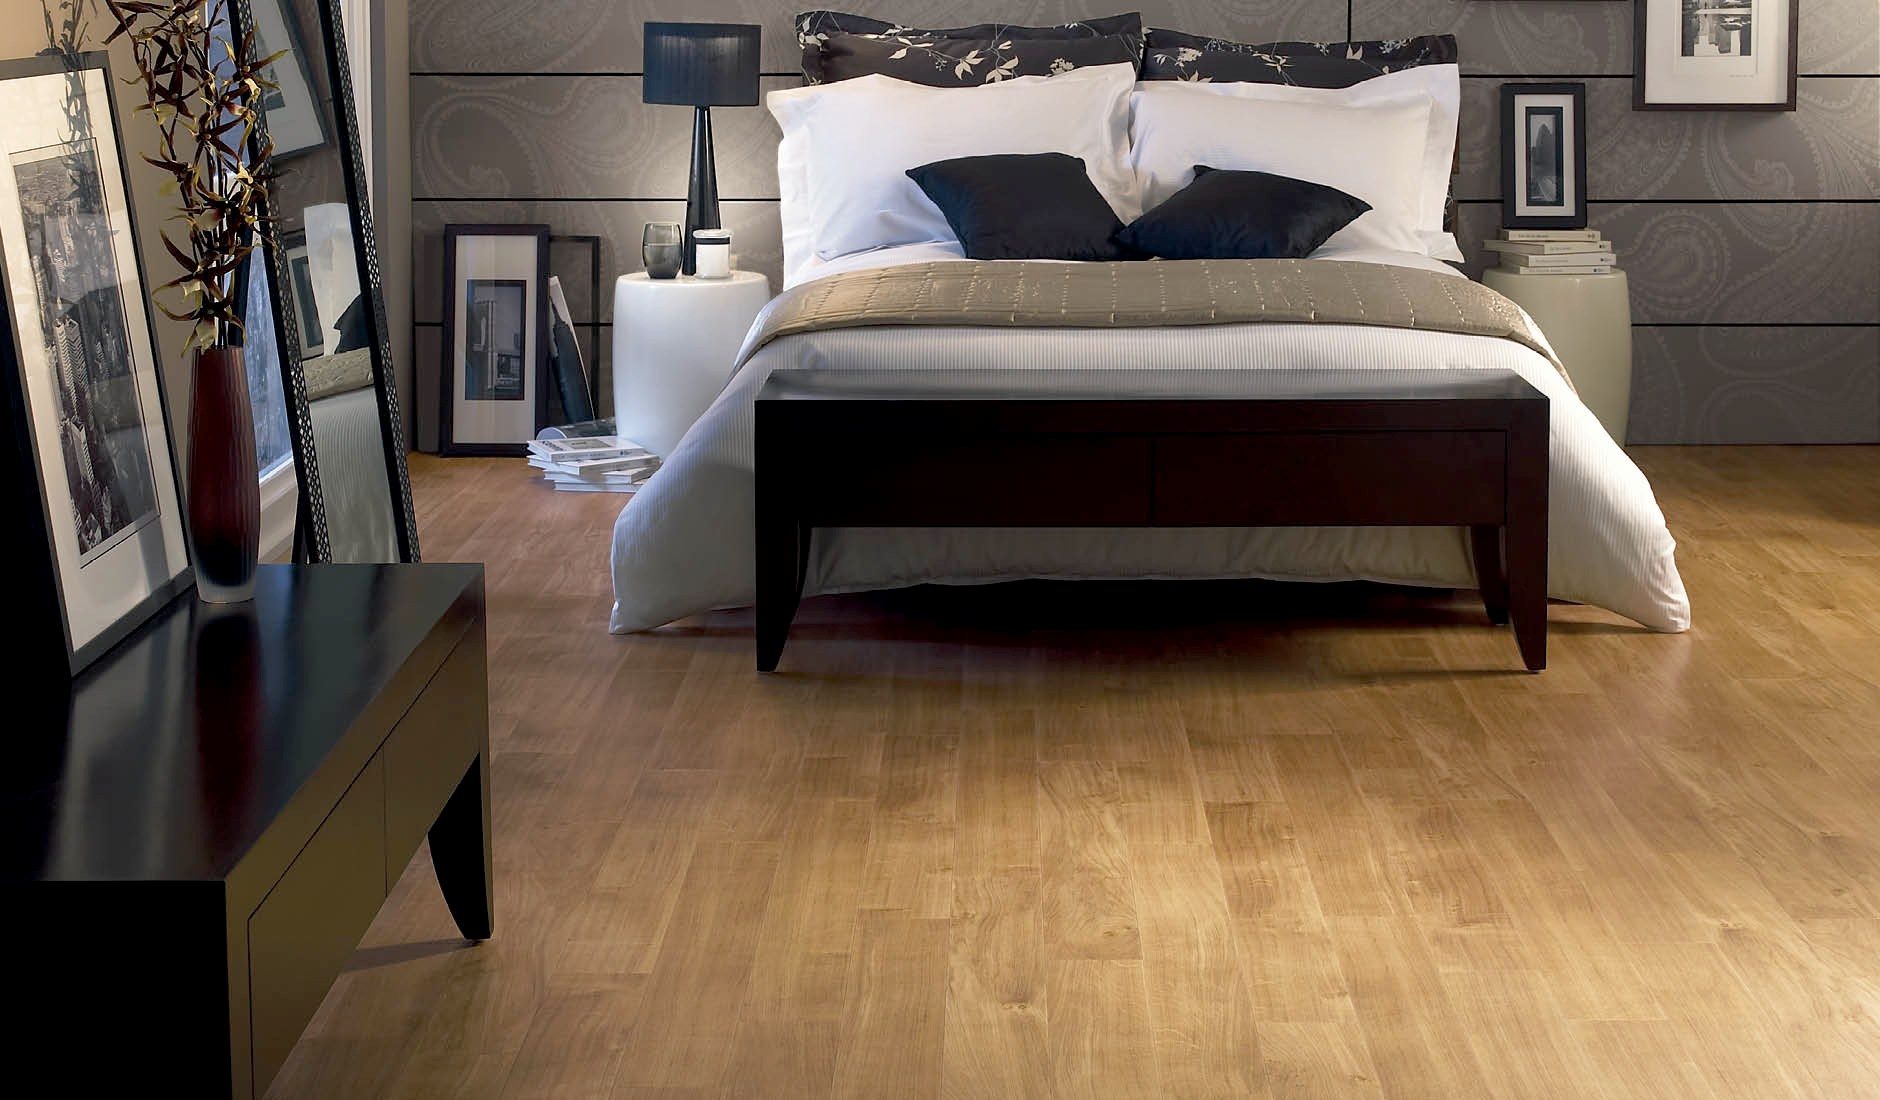 33 RUSTIC WOODEN FLOOR BEDROOM DESIGN INSPIRATIONS...... - Godfather Style